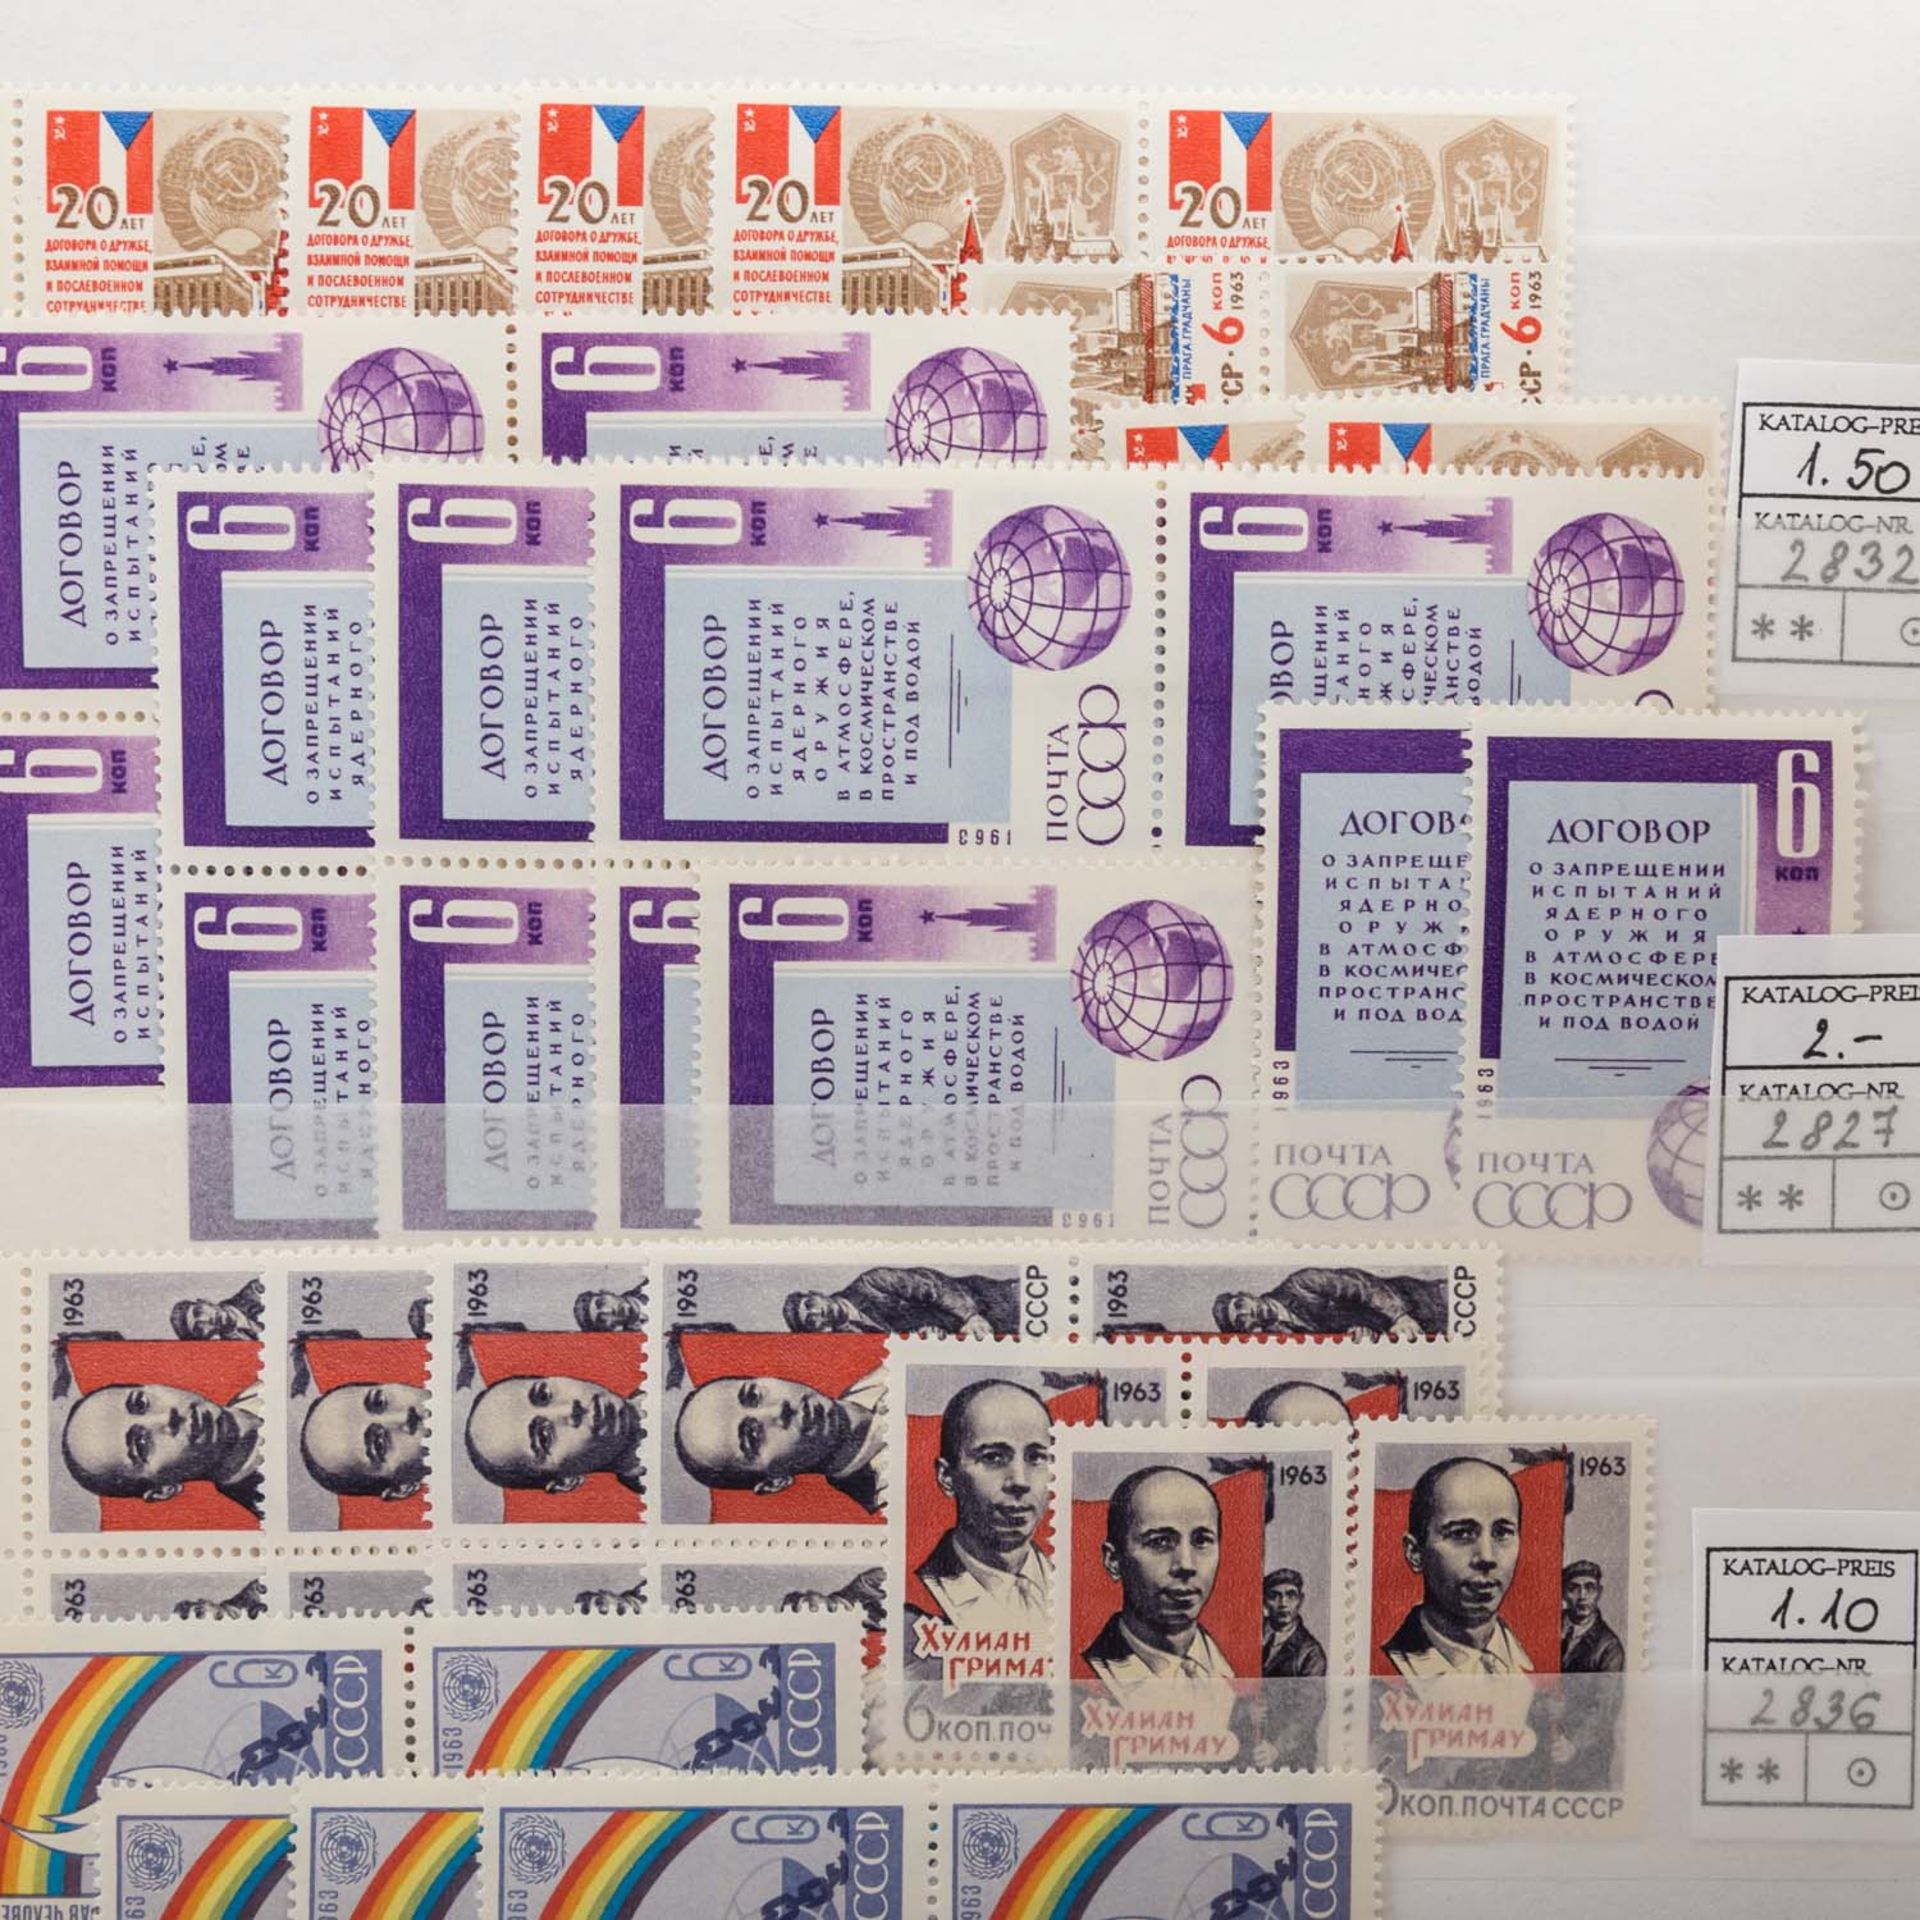 Sowjetunion - Einsteckbuch mit postfrischen Marken,diese mehrfach oft in Teilbogen und VB. Hoher - Bild 2 aus 6